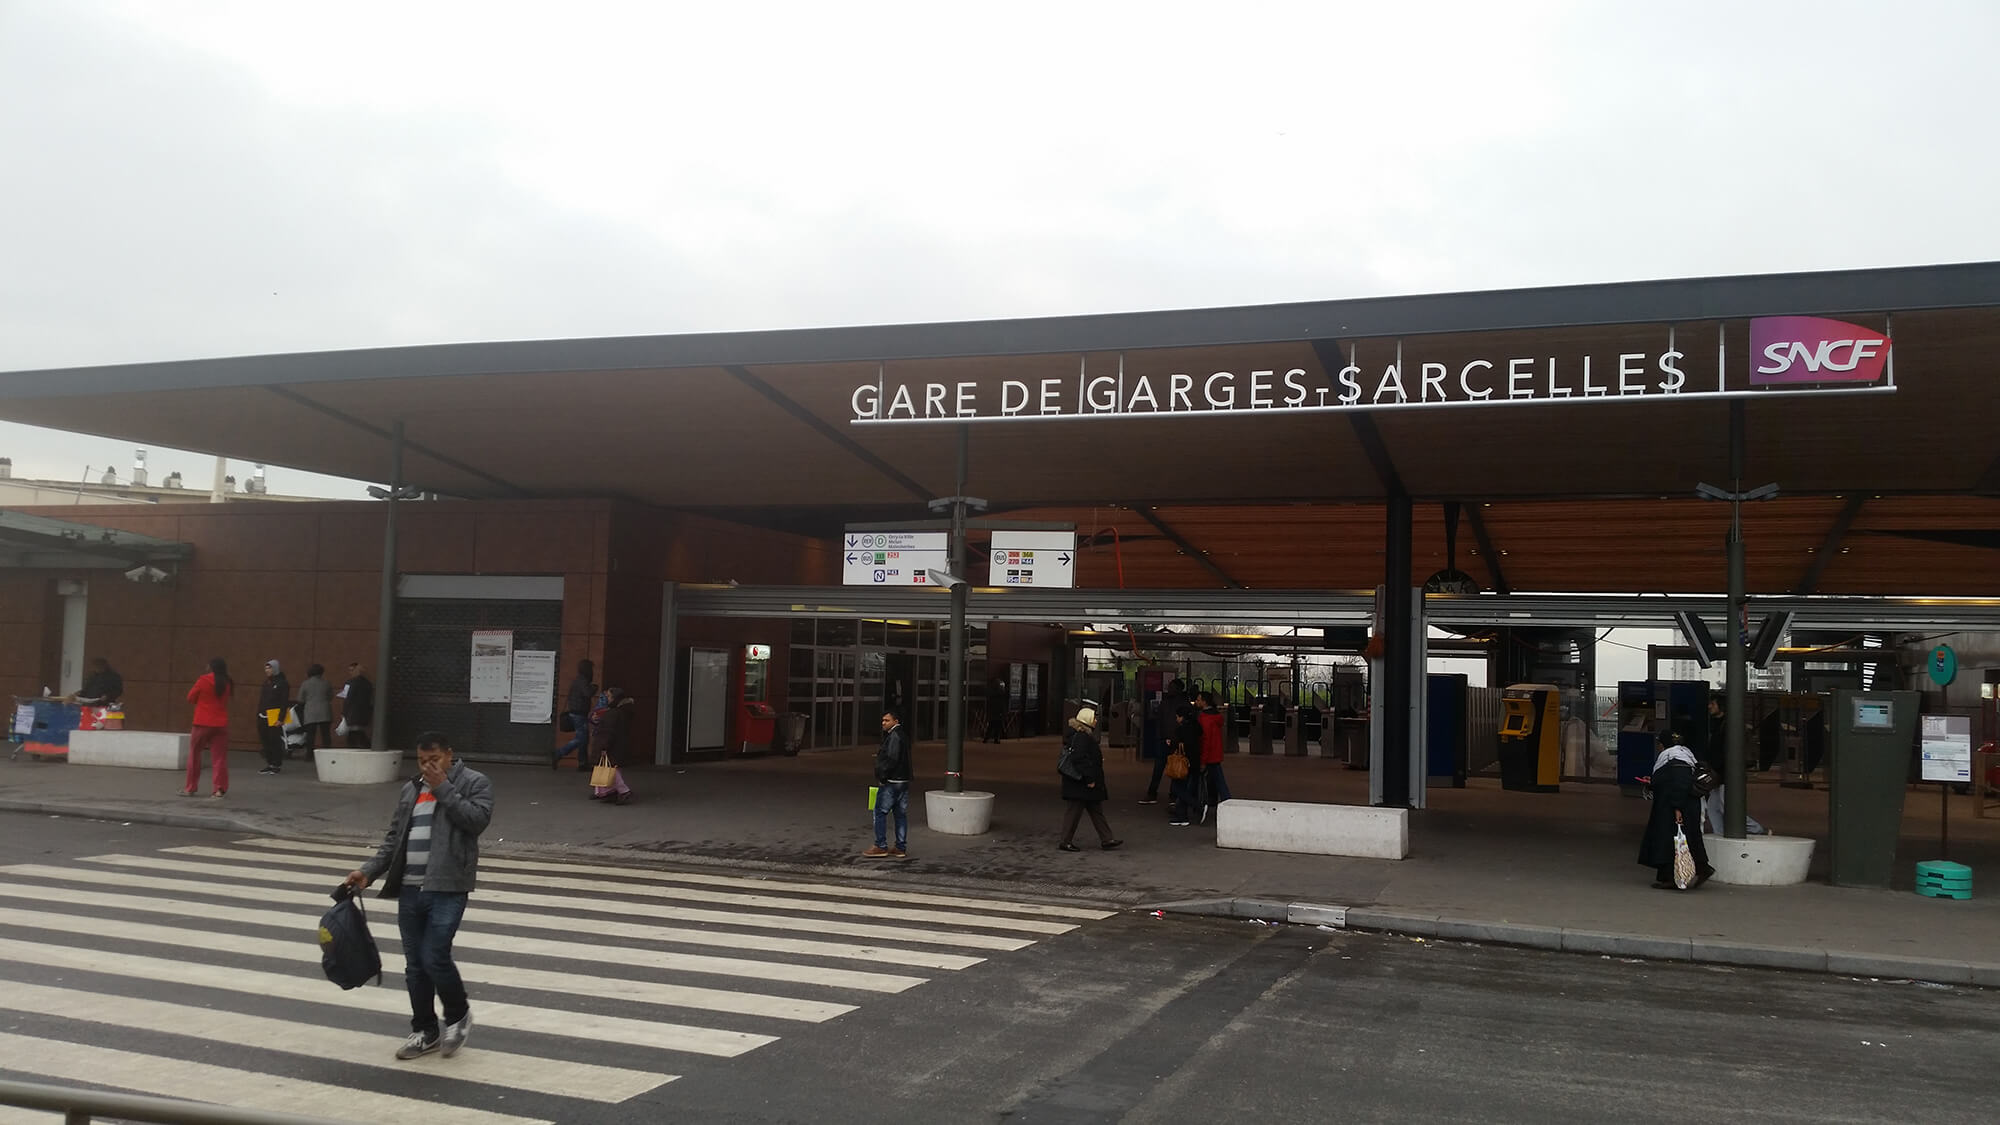 Aménagement de la gare SNCF – Garges-Sarcelles